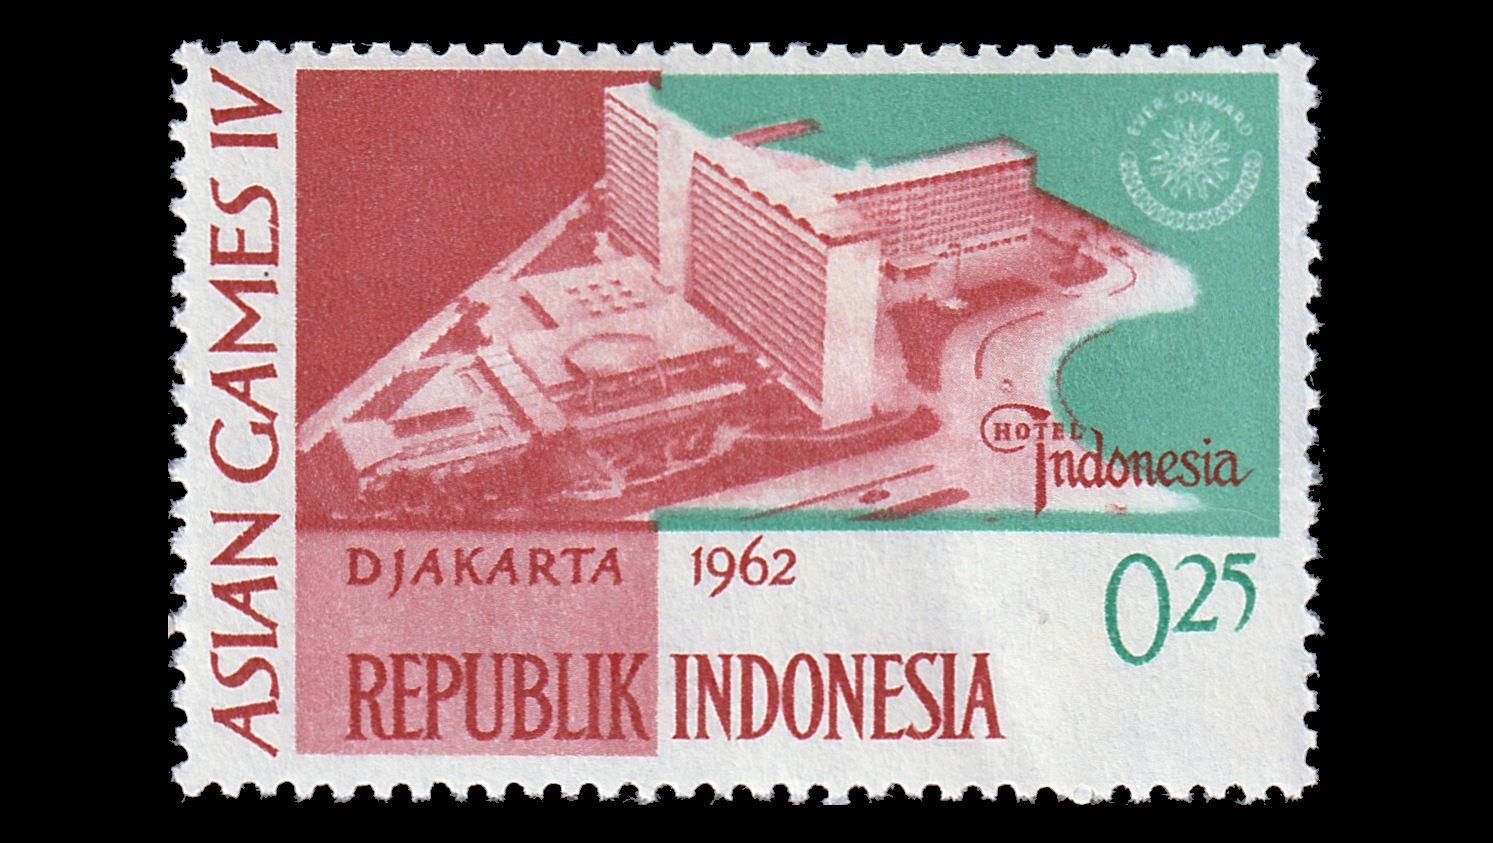 1962 Asian Games, Jakarta